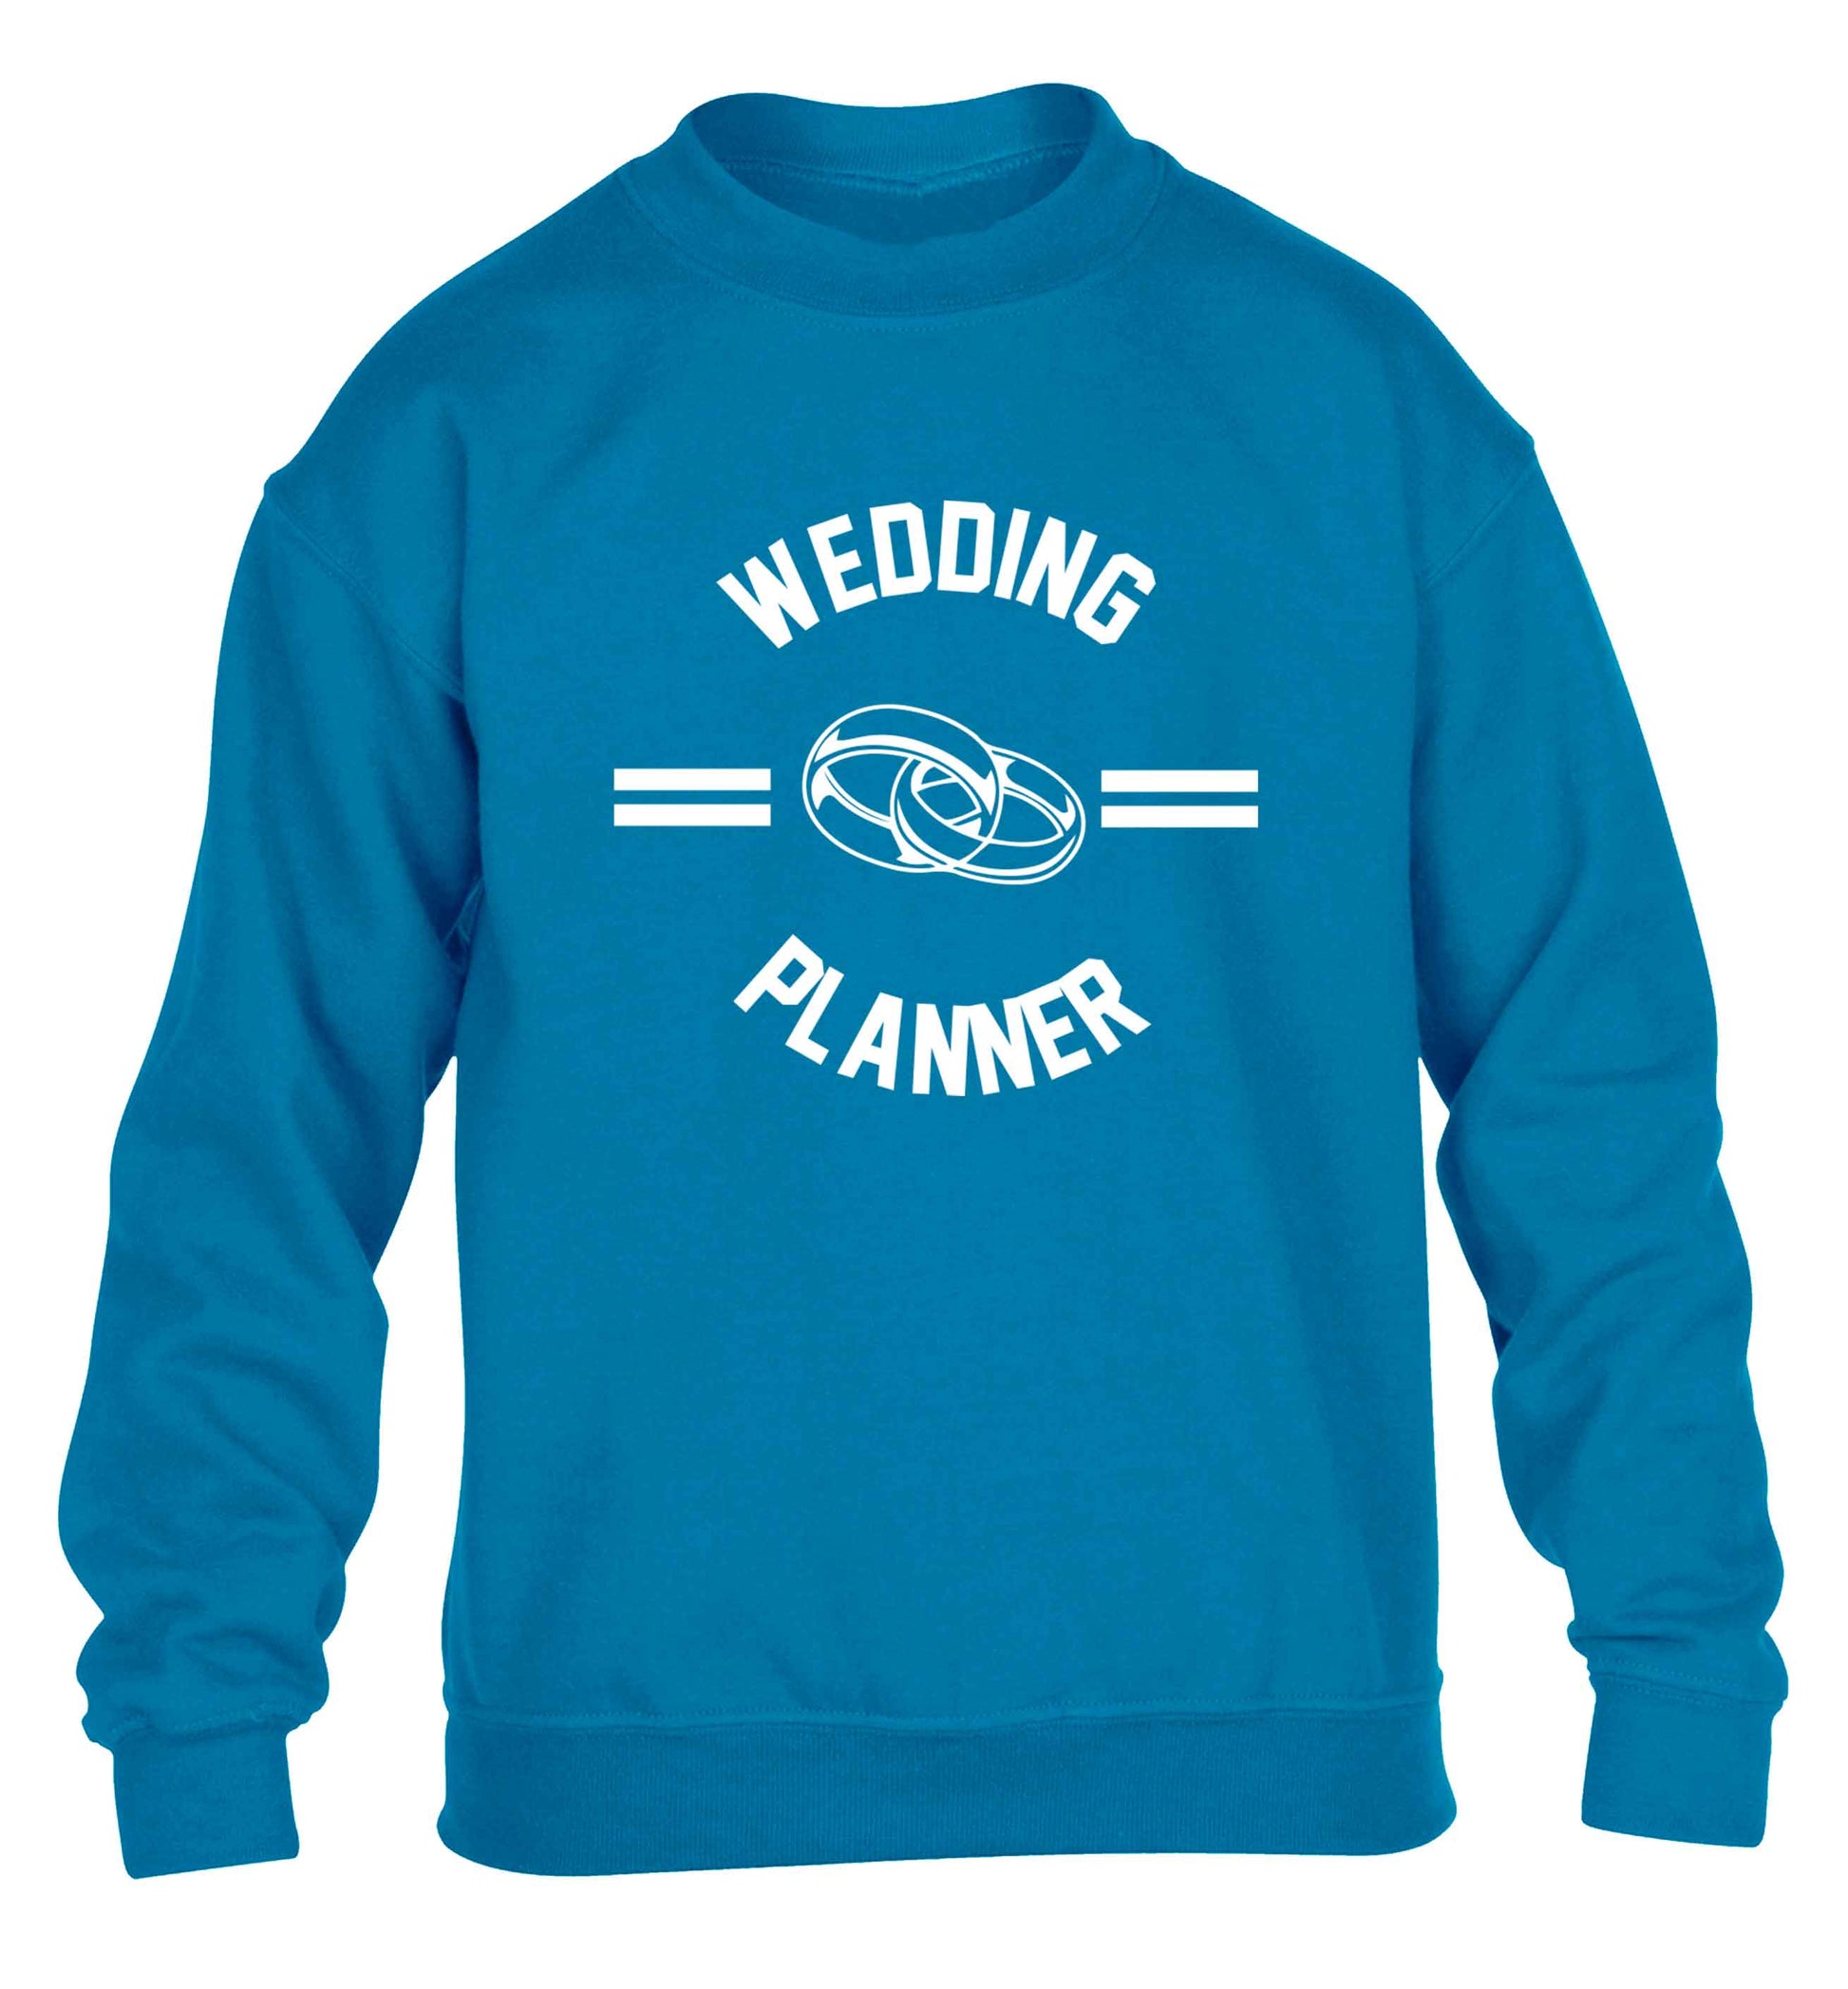 Wedding planner children's blue sweater 12-13 Years